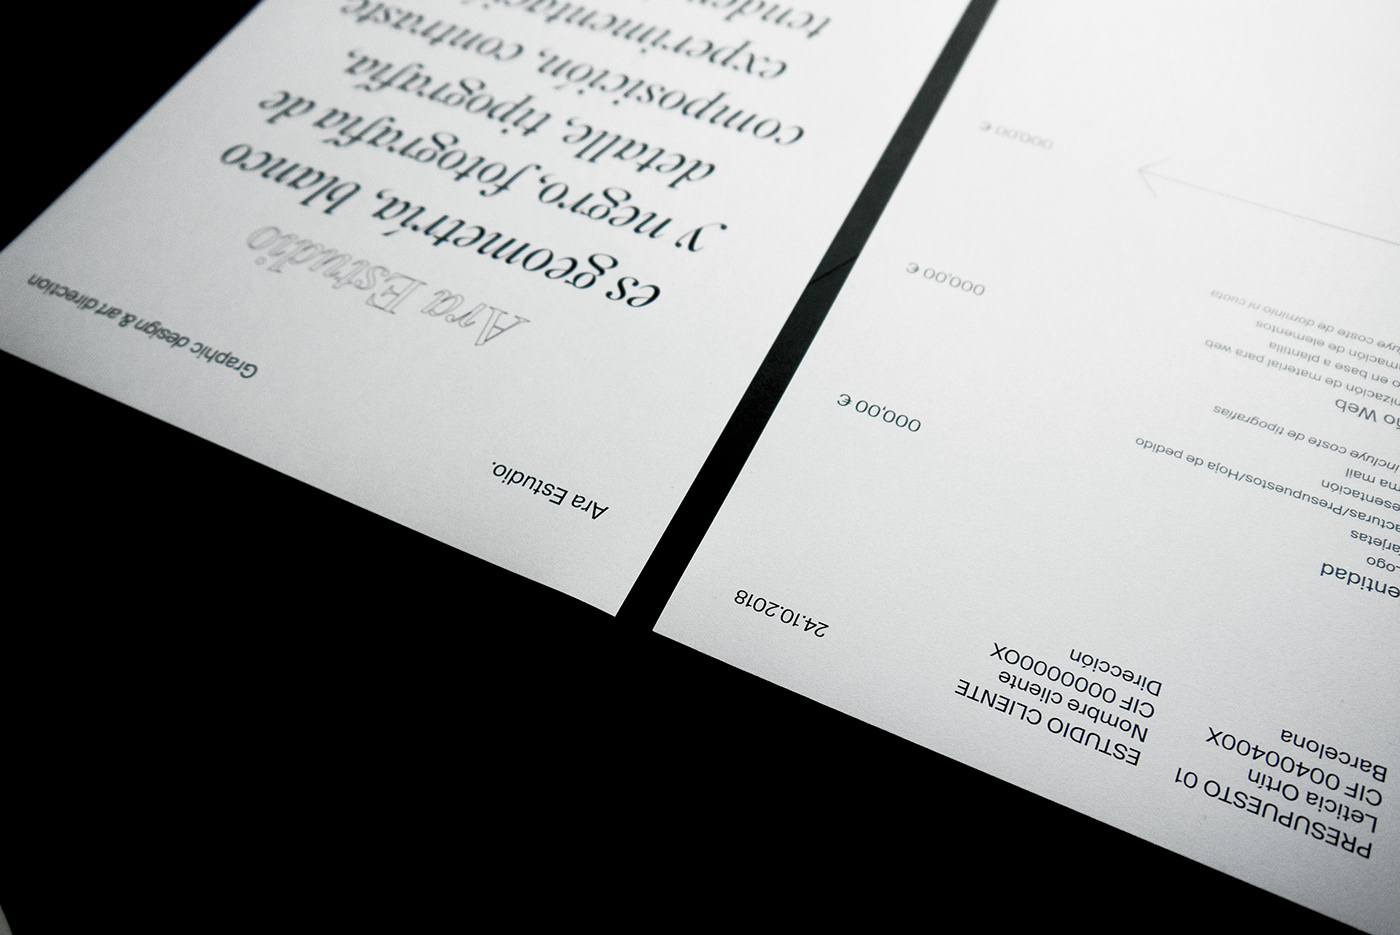 brand Selfbrand Bussines card graphic design  art direction  black and White ara estudio estudio studio